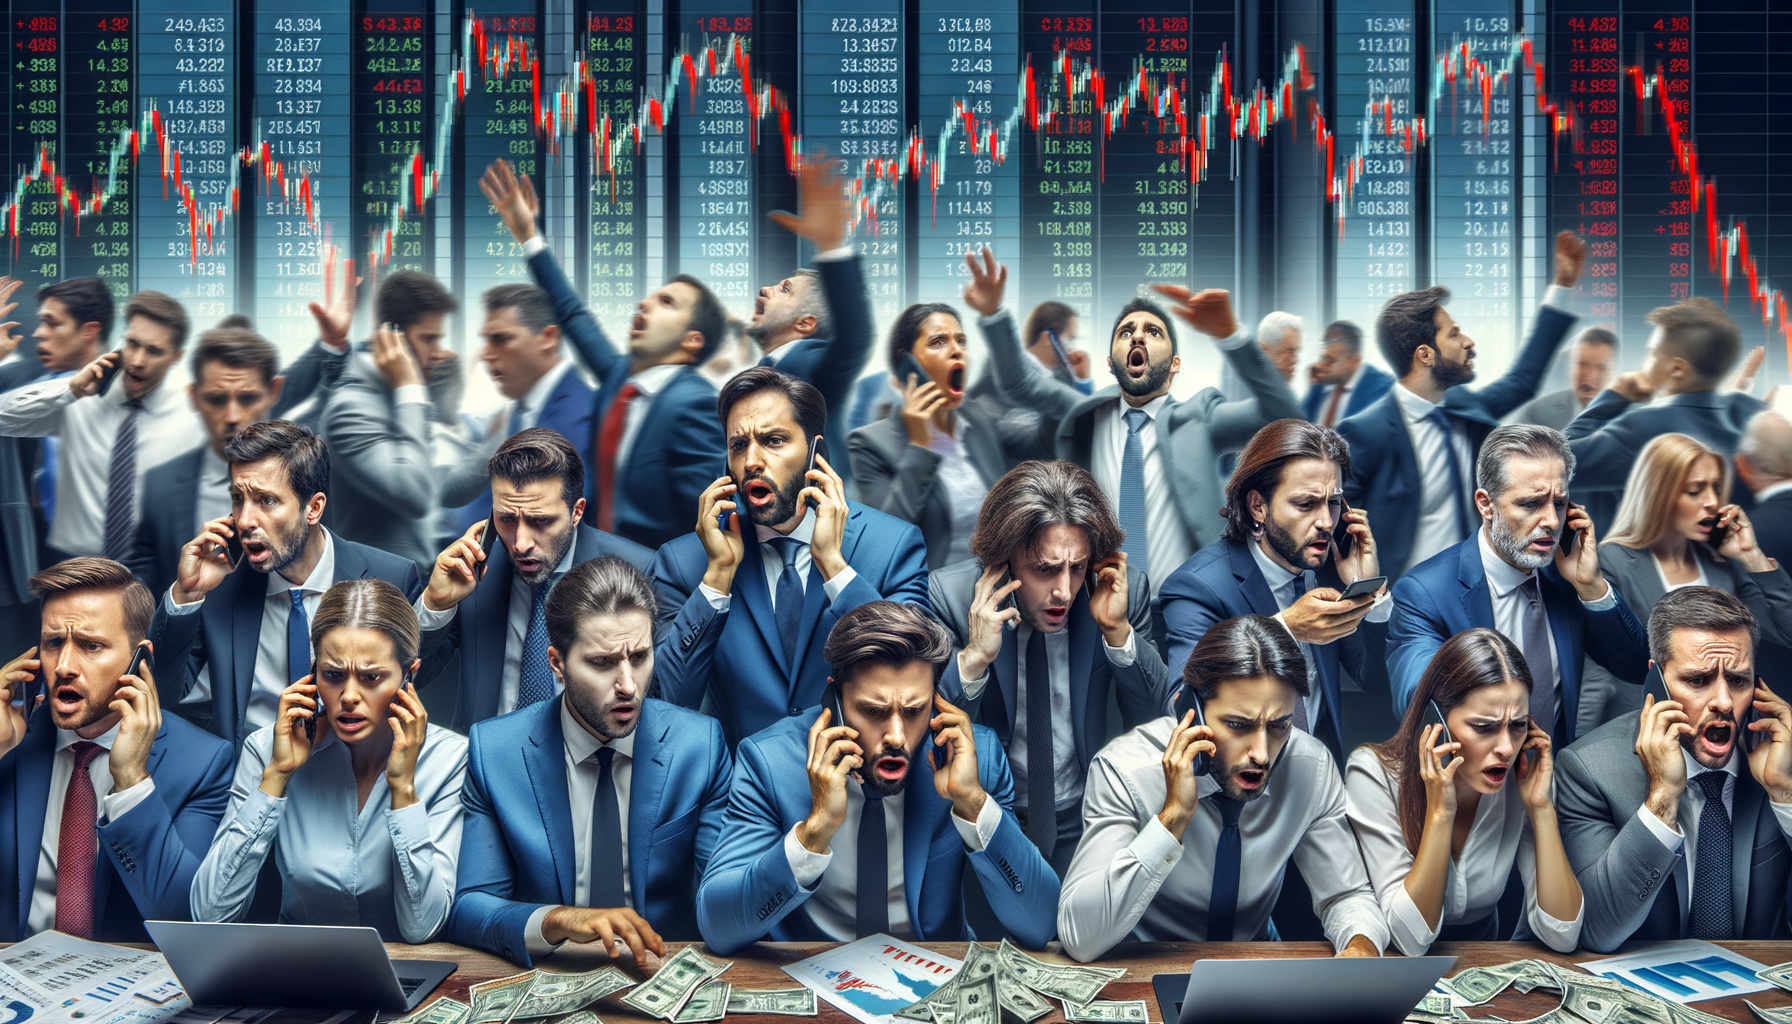 Bild von Anlegern und Händlern, die während eines Börsencrashs reagieren